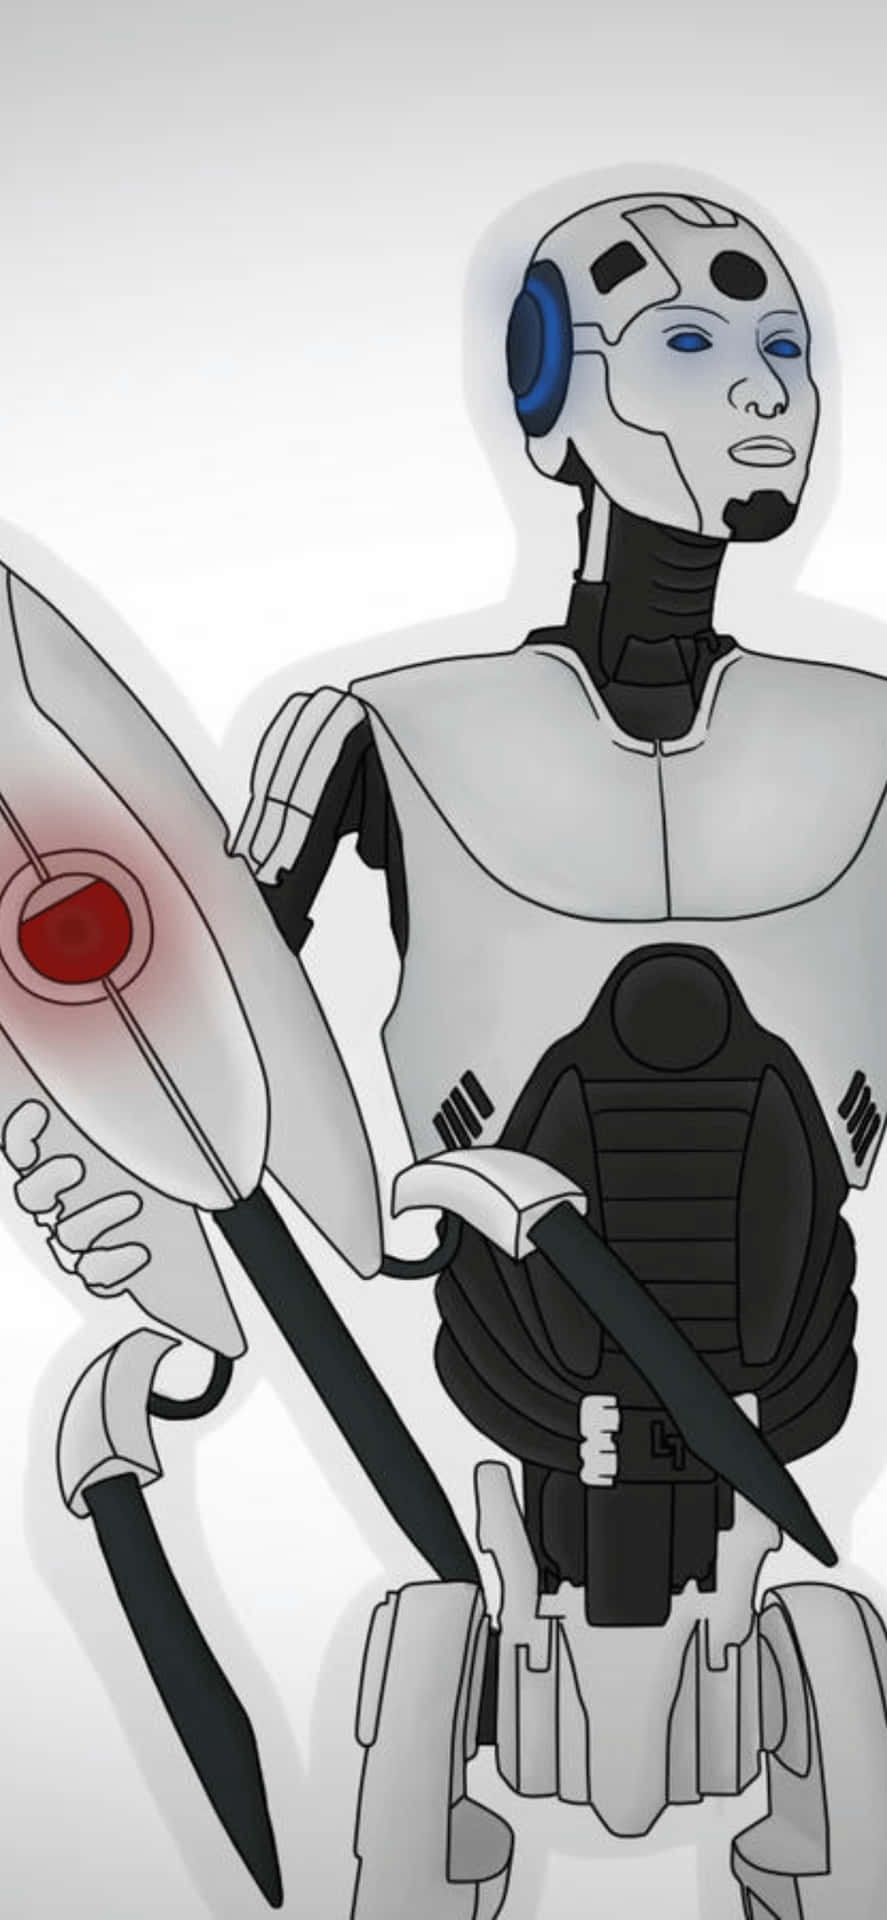 Unrobot Sosteniendo Una Espada Y Un Cuchillo